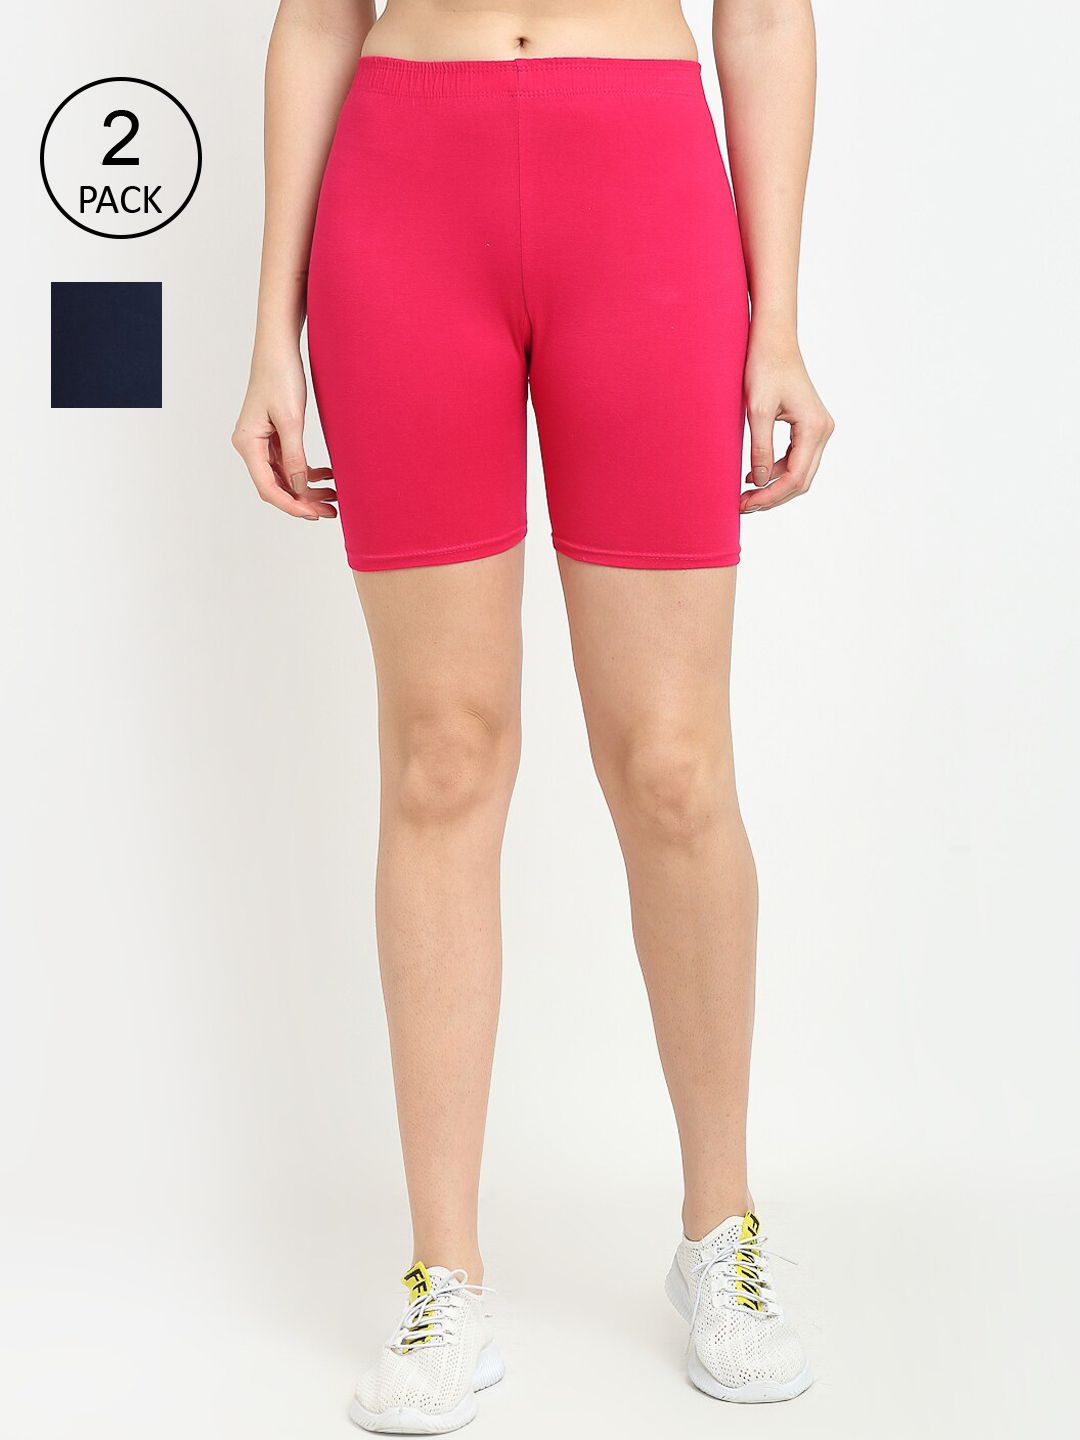 GRACIT Women Pink & Black Set Of 2 Biker Shorts Price in India